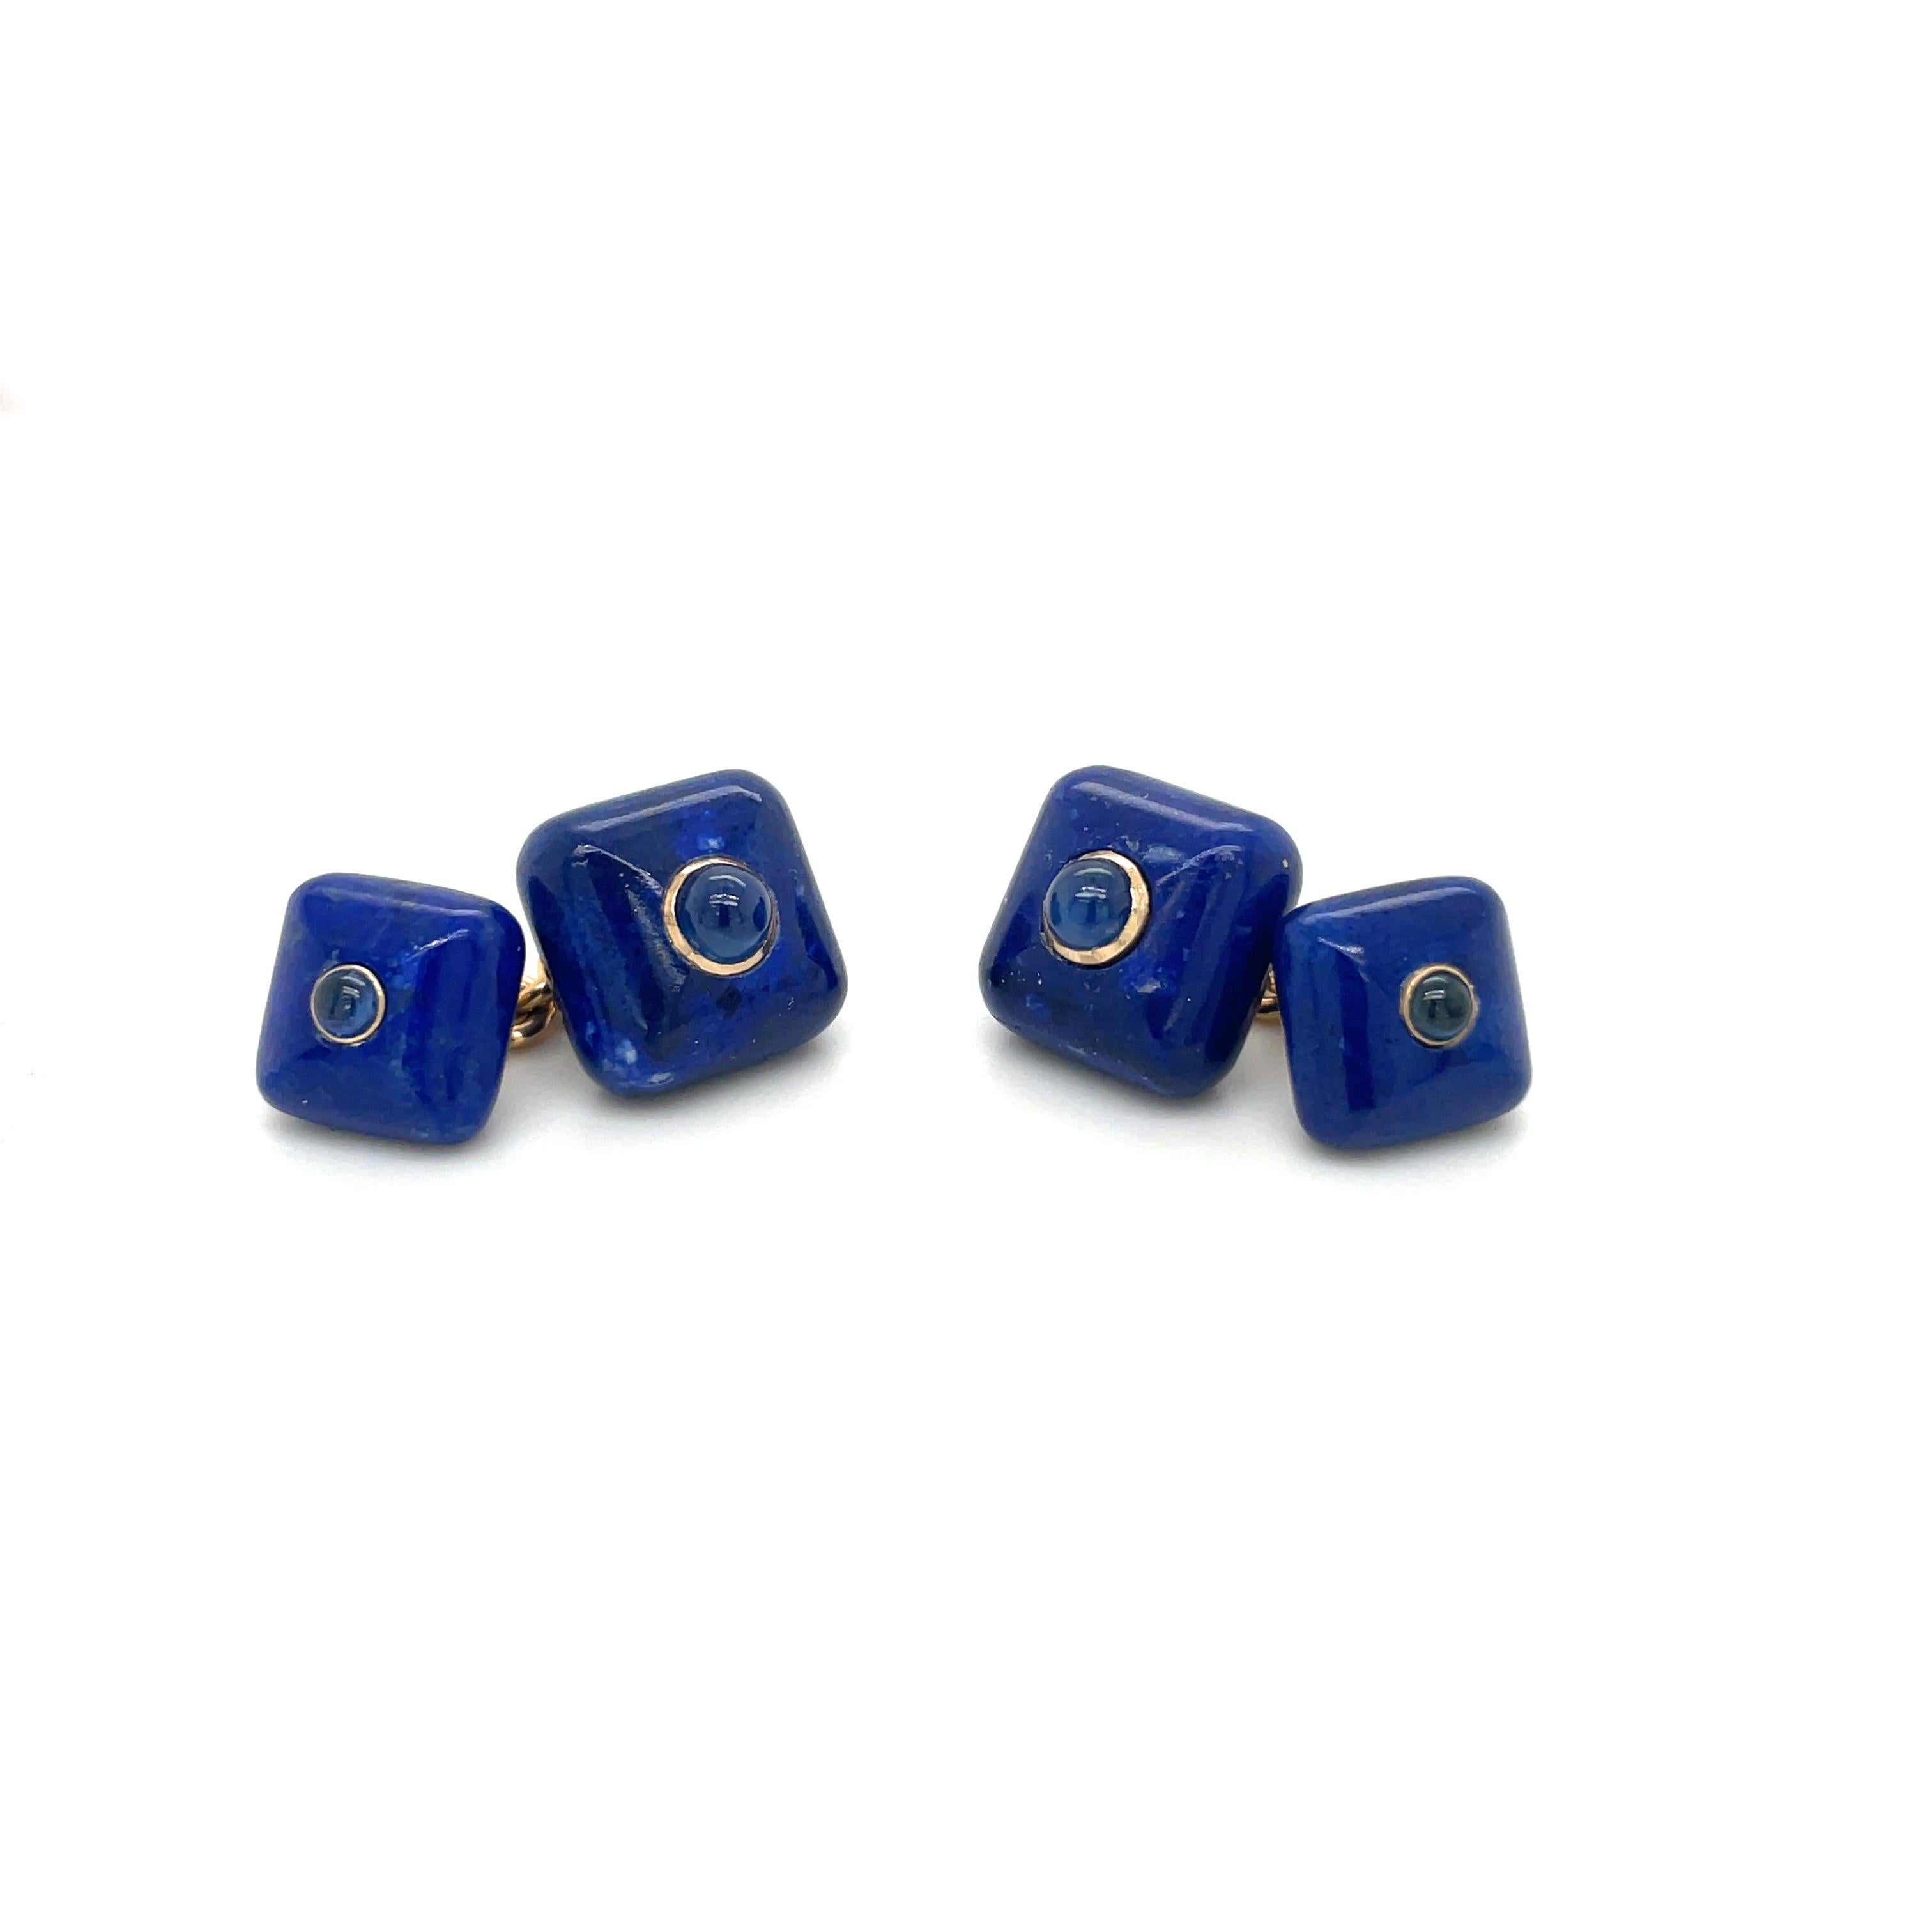 Preciosos gemelos de lapislázuli pulido en forma de almohada. Cada centro está engastado con un cabujón de zafiro azul. Las piedras están unidas por una cadena de eslabones de oro de 14 quilates.
Estampado Trianon 14k